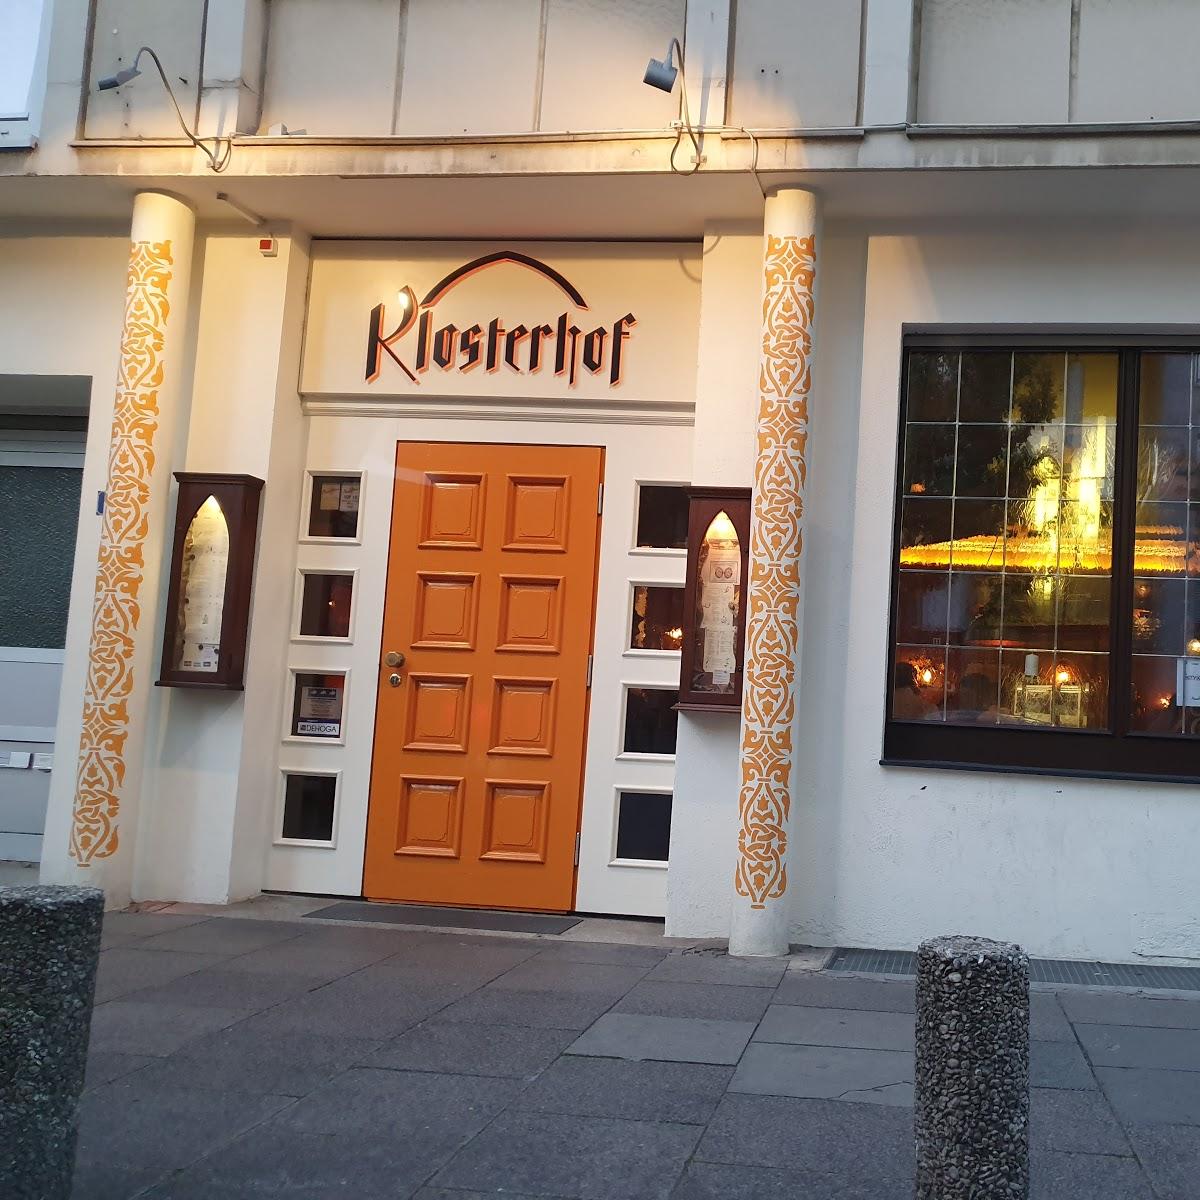 Restaurant "Restaurant Klosterhof" in Frankfurt am Main